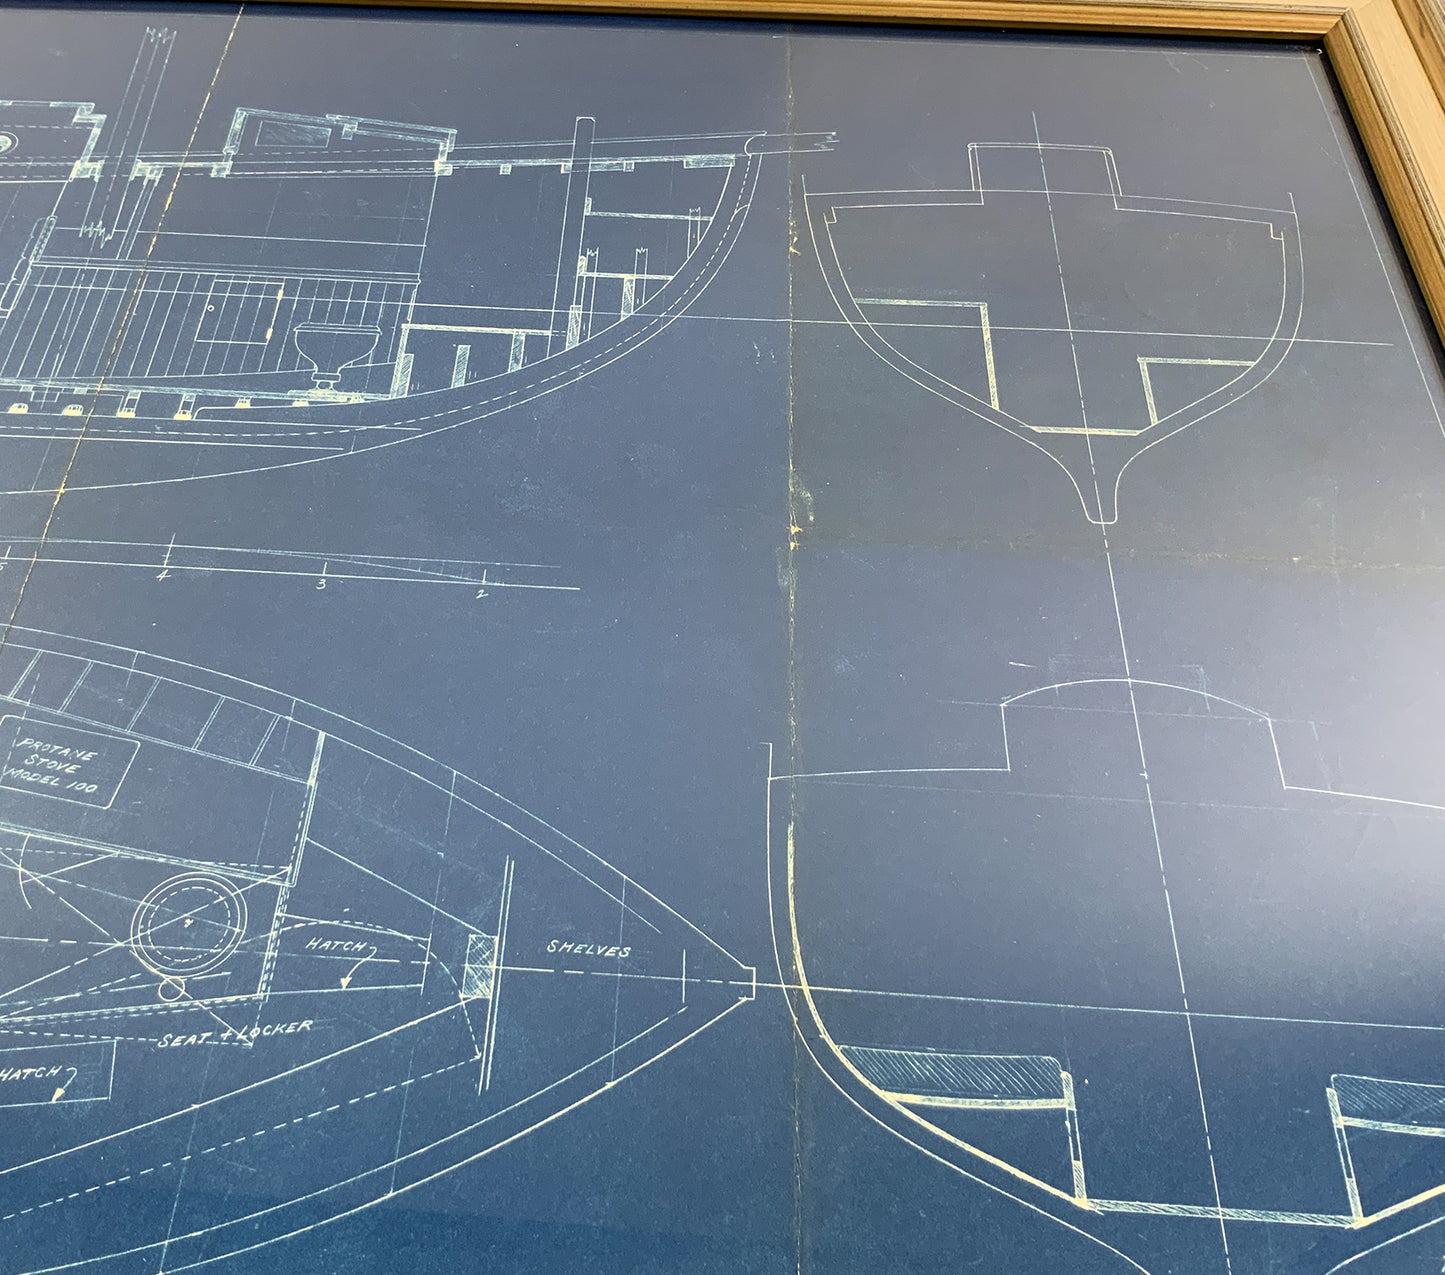 Yacht Blueprint By John G. Alden 1931 - Lannan Gallery